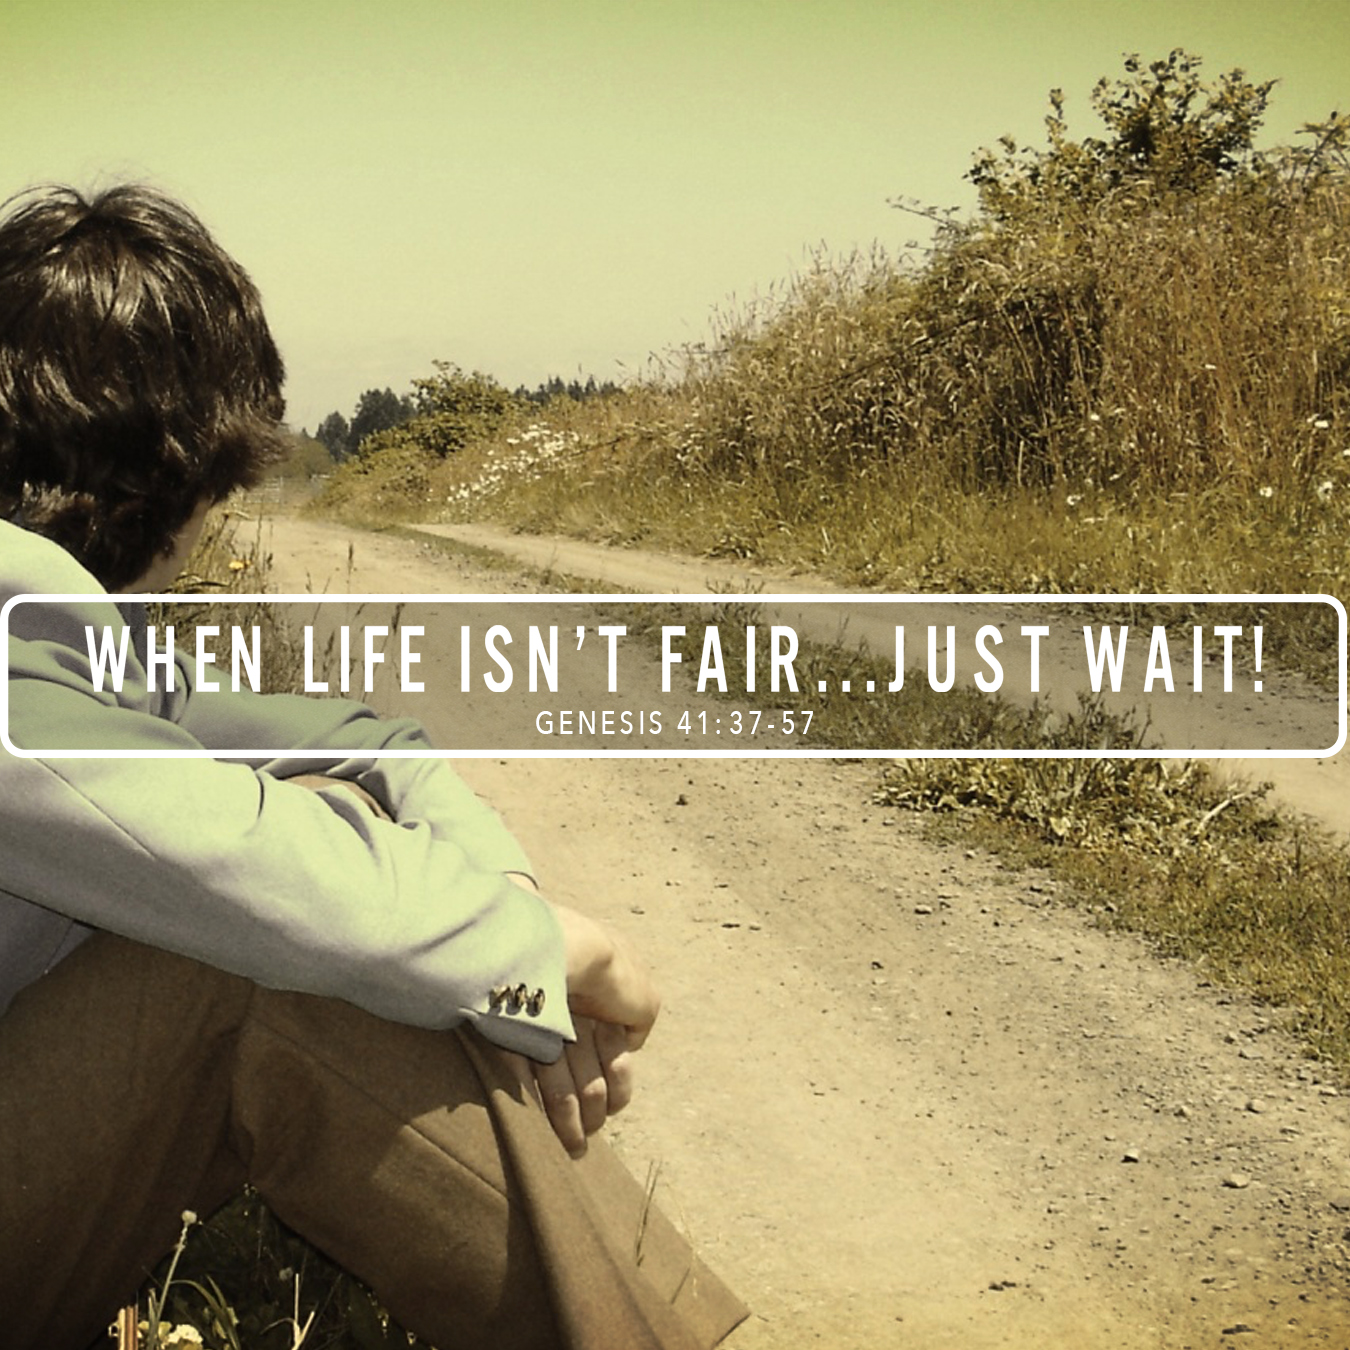 When Life Isn't Fair.... Just Wait!